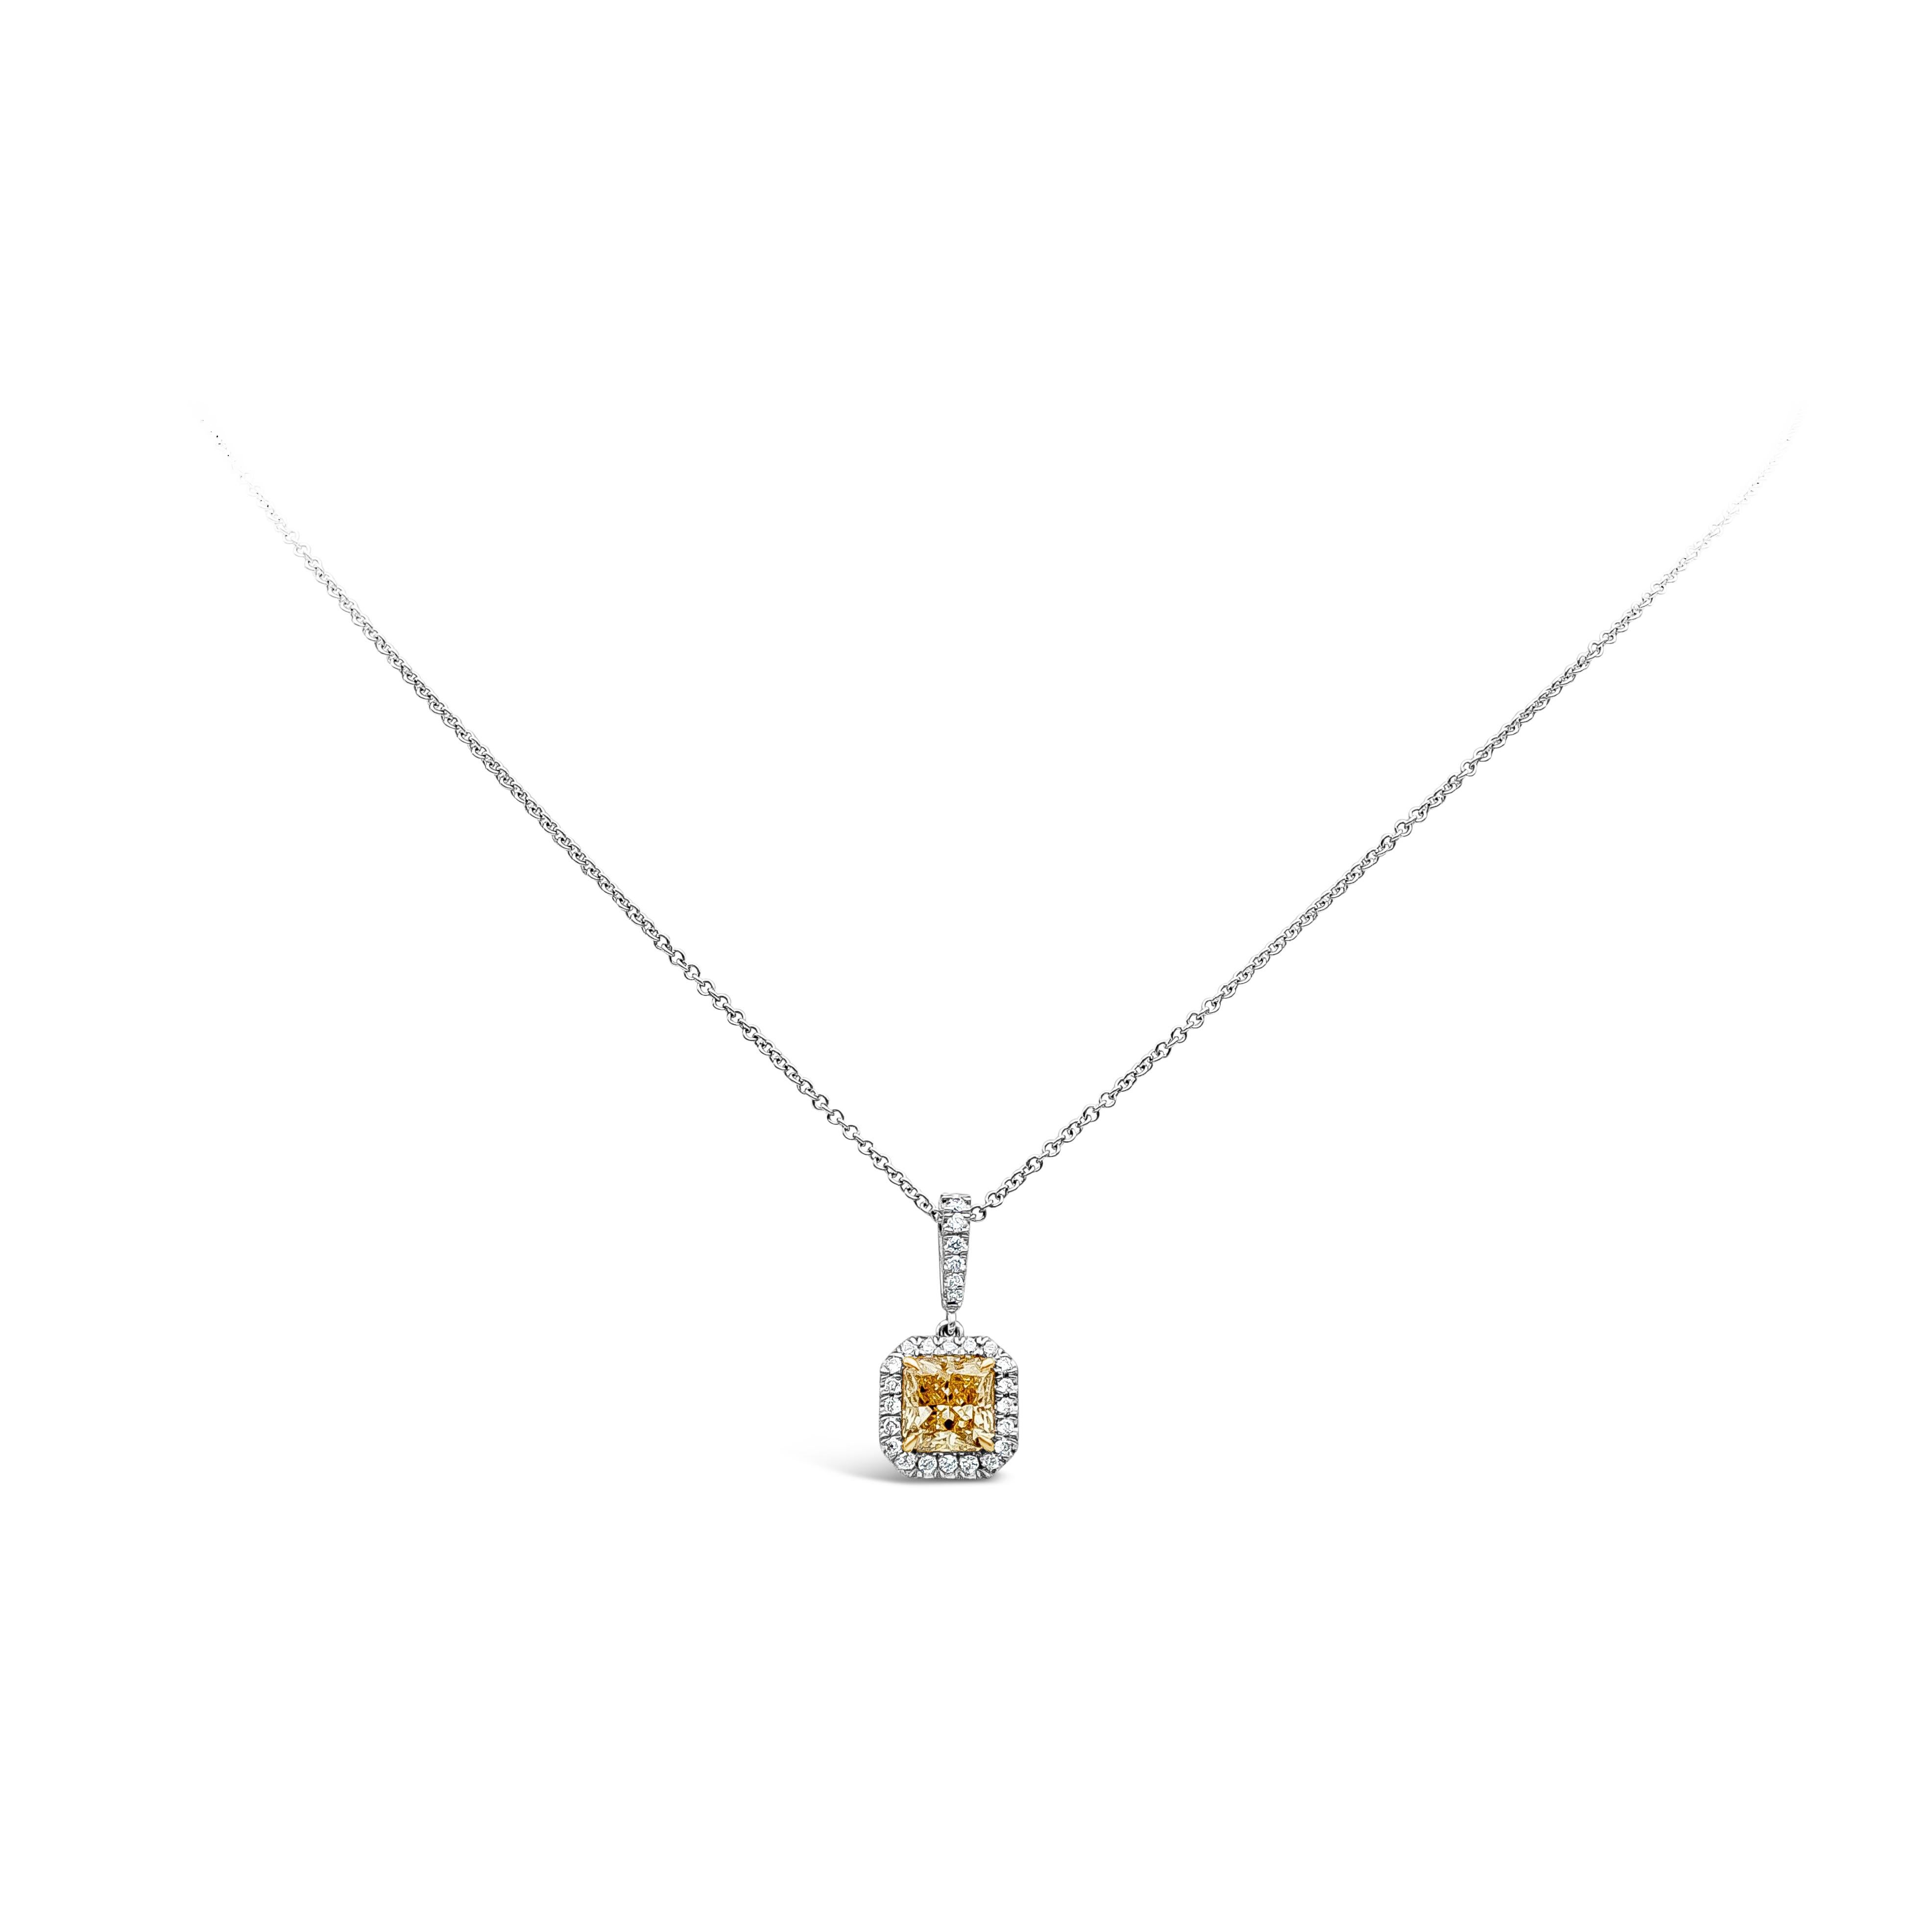 Dieser wunderschöne gelbe Diamant im Brillantschliff von 1,04 Karat, gefasst in Gelbgoldzacken, ist von runden Brillanten umgeben. An einem diamantbesetzten Bügel an einer Kette aus 18 Karat Weißgold hängend. 

Stil in verschiedenen Preisklassen